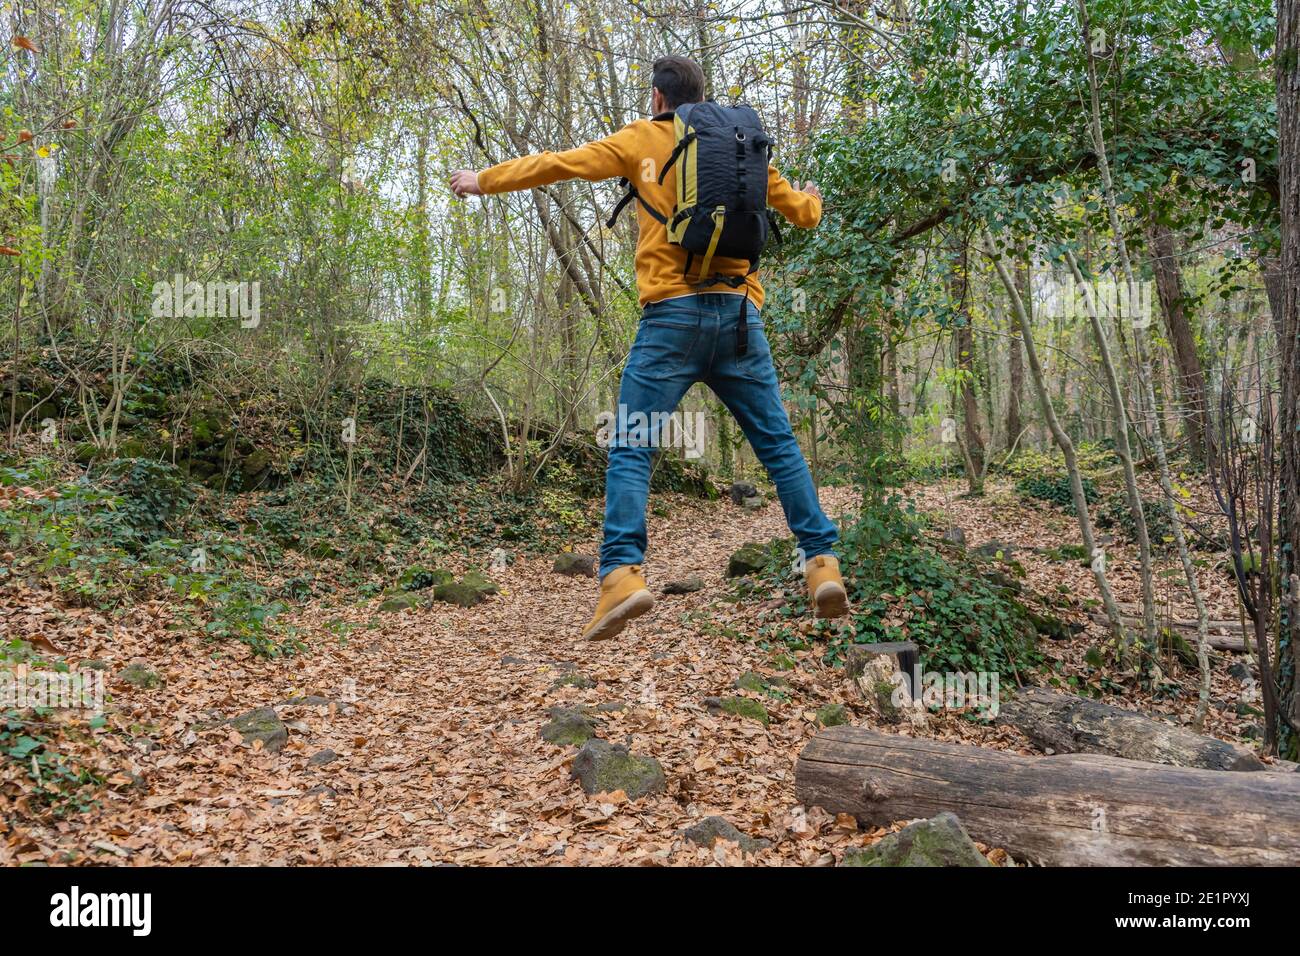 Mann mit Rucksack springen in Wald.glücklich, lustig, Freude Glück Feier Outdoor-Reise Fernweh Konzept Lifestyle. Stockfoto